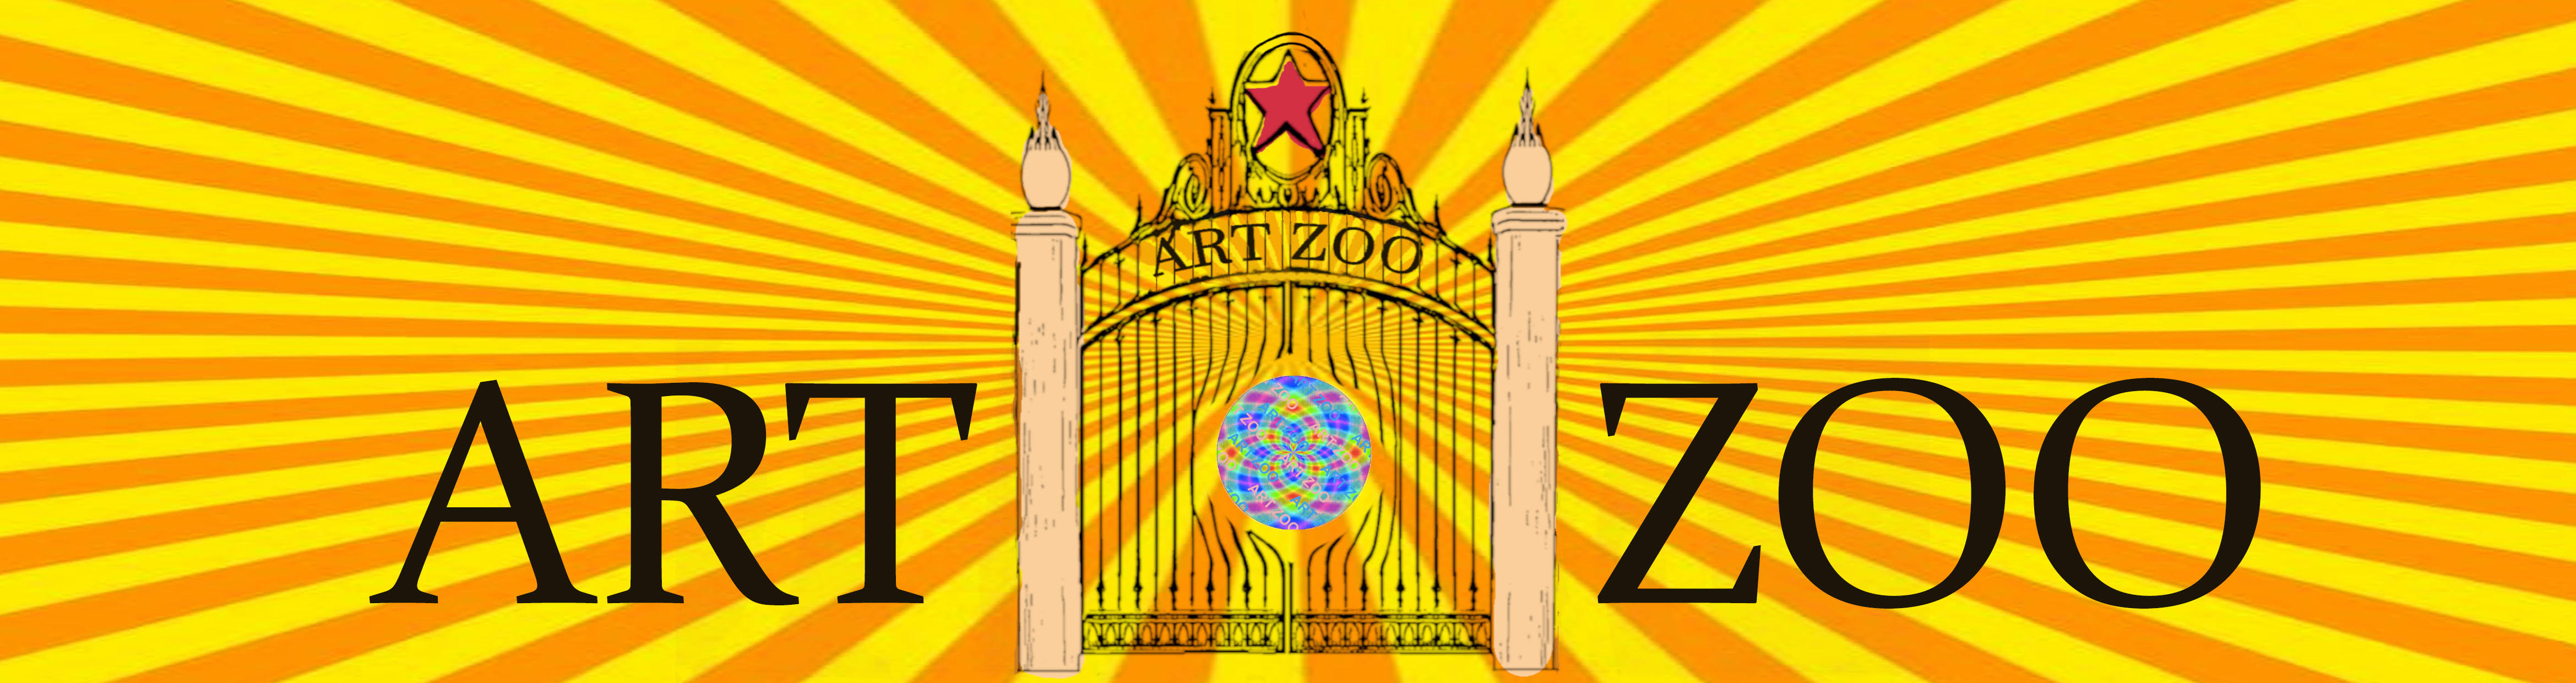 Art Zoo